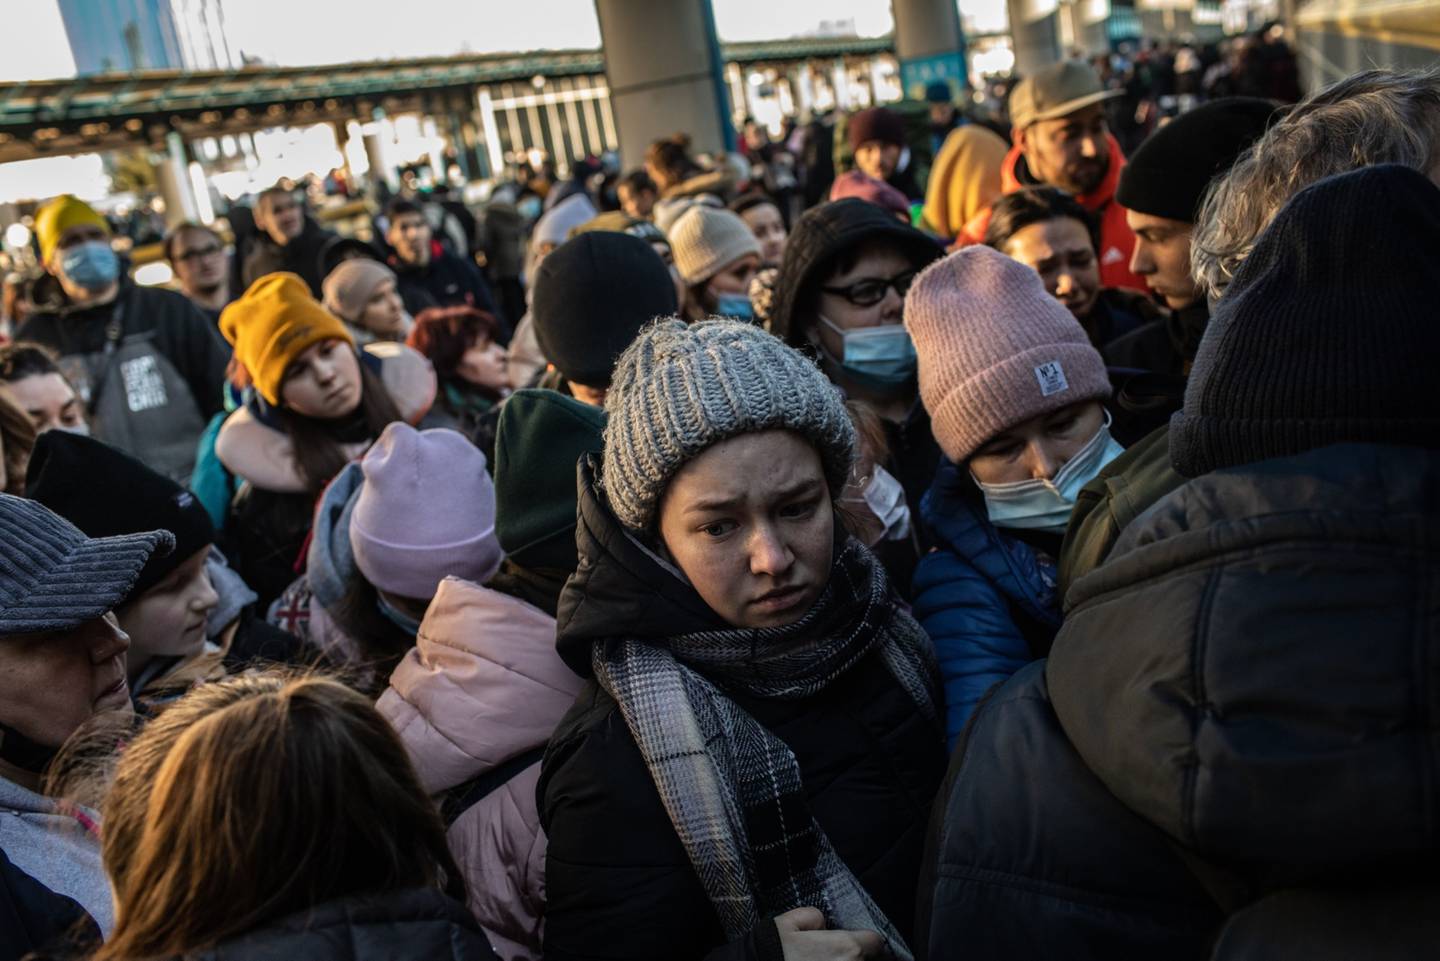 Los ucranianos desplazados que quieren abandonar la capital suben a un tren en la estación central de Kiev.